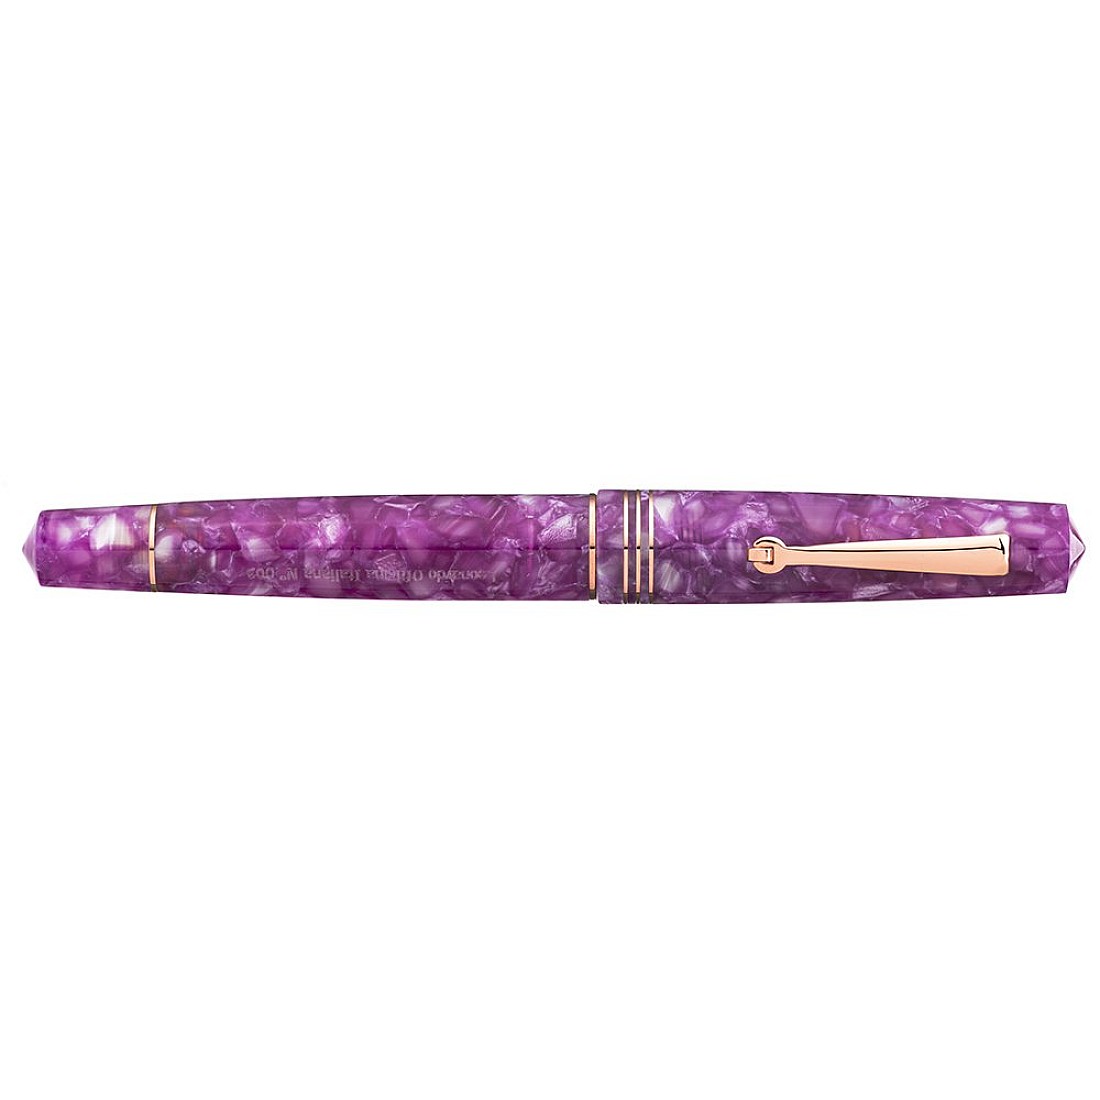 Leonardo Momento Zero Lavender Purple RGT Fountain pen